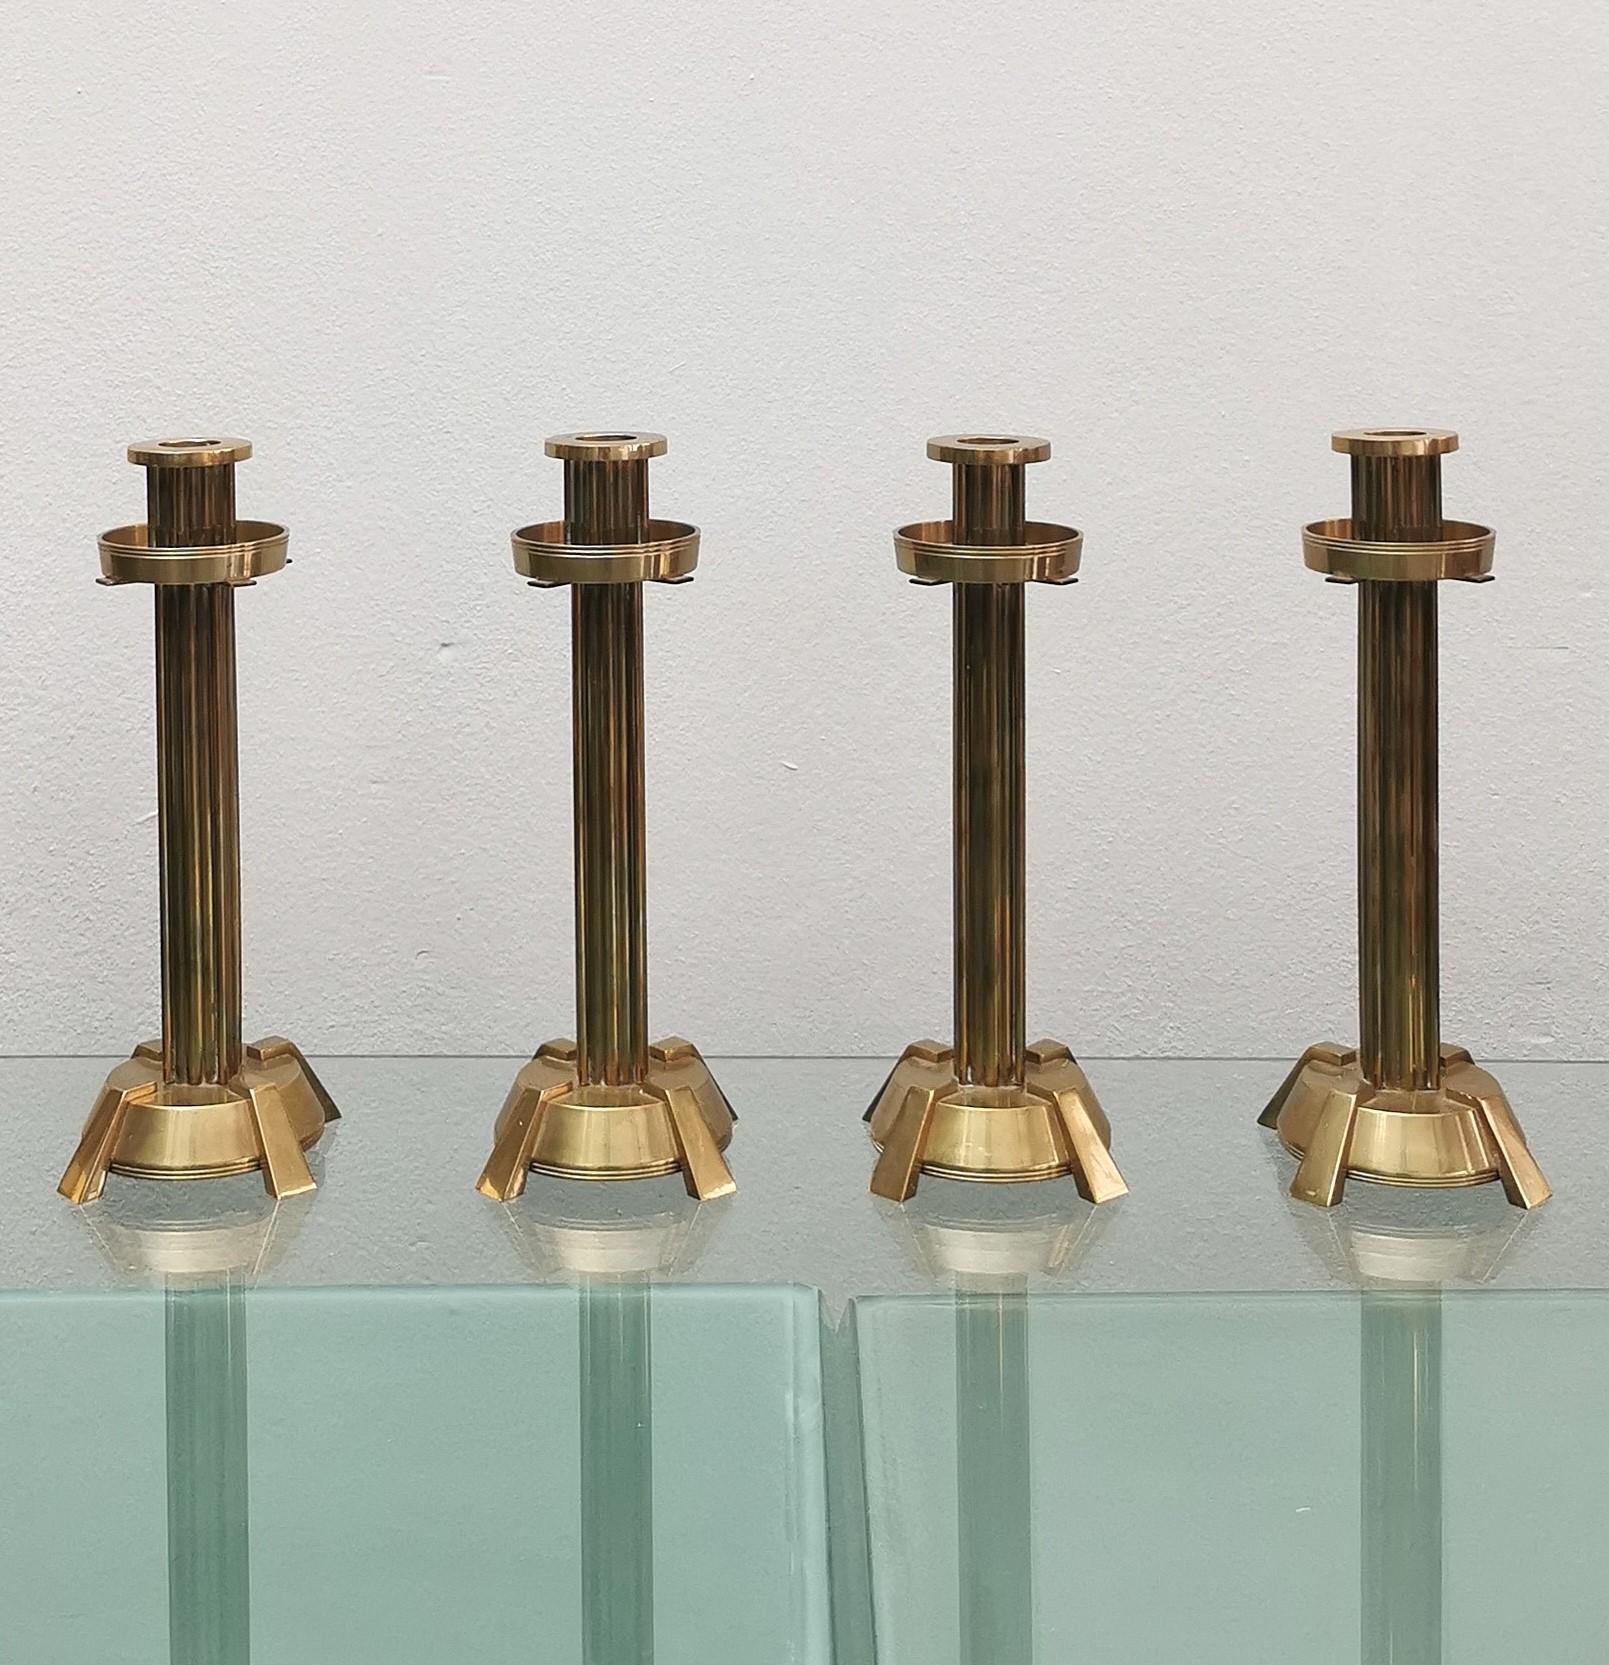 Elegant Set de 4 monocères / candélabres de taille considérable produits en Italie dans les années 70, entièrement en laiton et s'adaptant à tous les environnements.



Note : Nous essayons d'offrir à nos clients un excellent service, même pour les